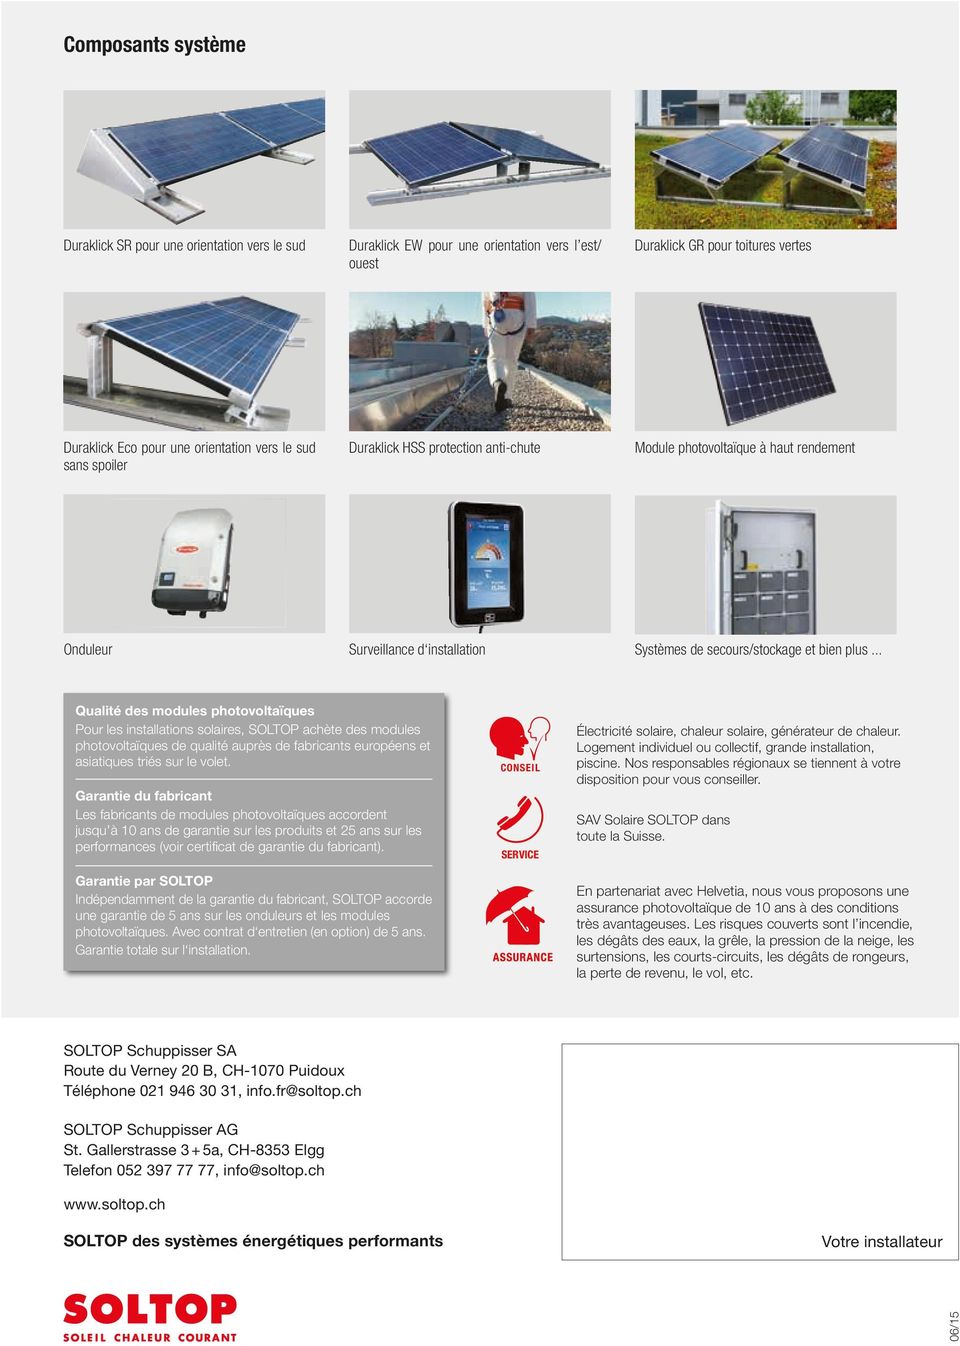 .. Qualité des modules photovoltaïques Pour les installations solaires, SOLTOP achète des modules photovoltaïques de qualité auprès de fabricants européens et asiatiques triés sur le volet.